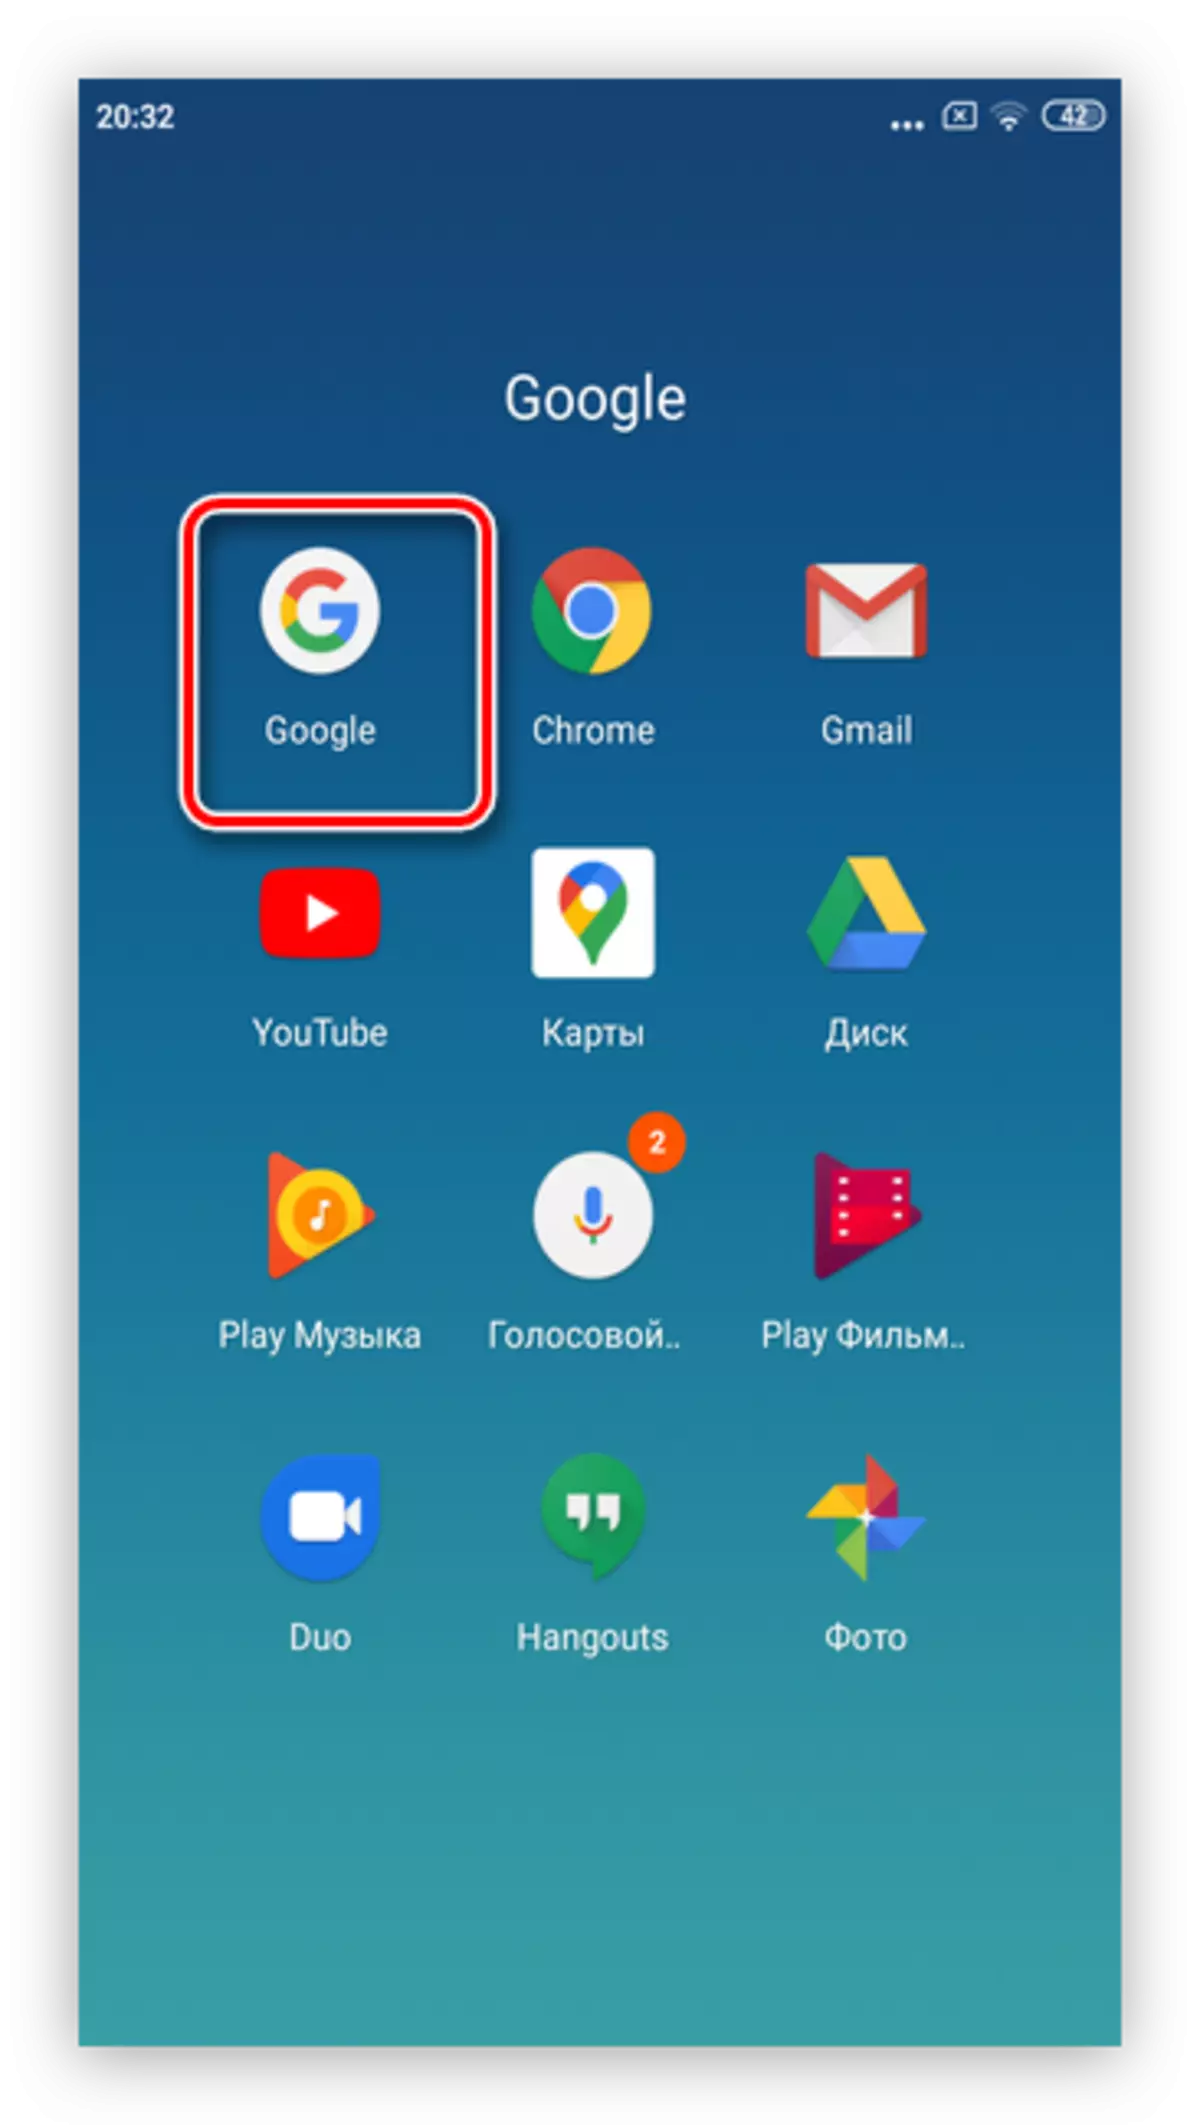 បើកកម្មវិធី Google ដើម្បីលុបការផ្សាយពាណិជ្ជកម្ម Google នៅលើស្មាតហ្វូន Android តាមរយៈប្រព័ន្ធ